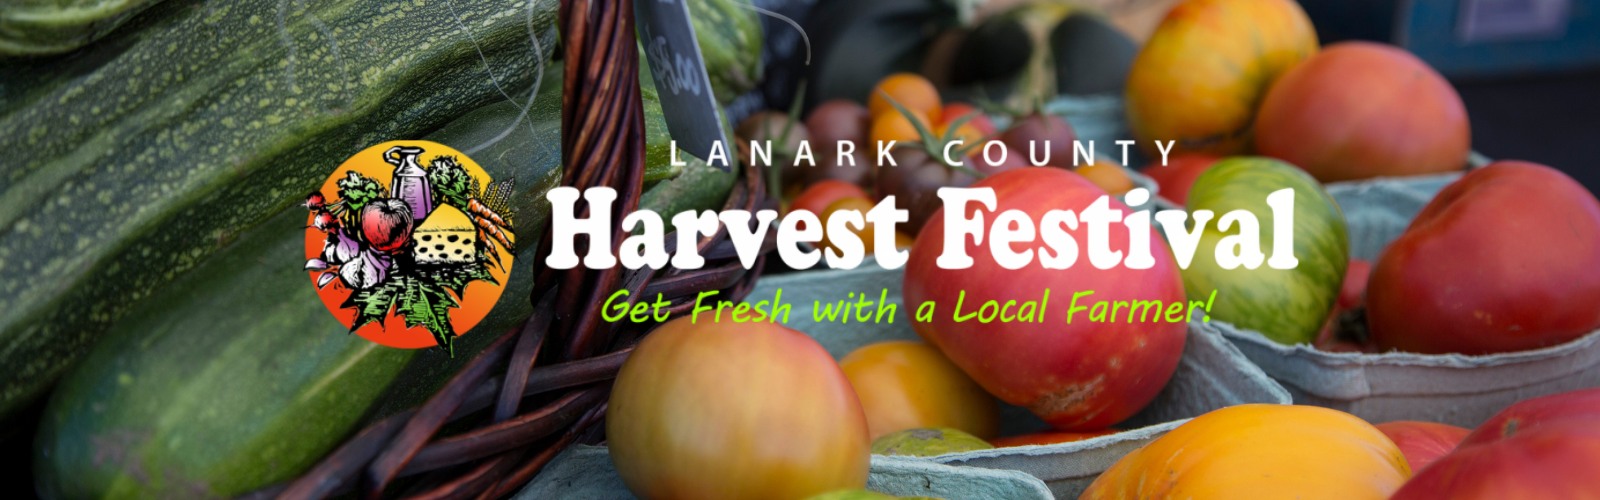 Fresh vegetables displayed with lettering 'Lanark County Harvest Festival'